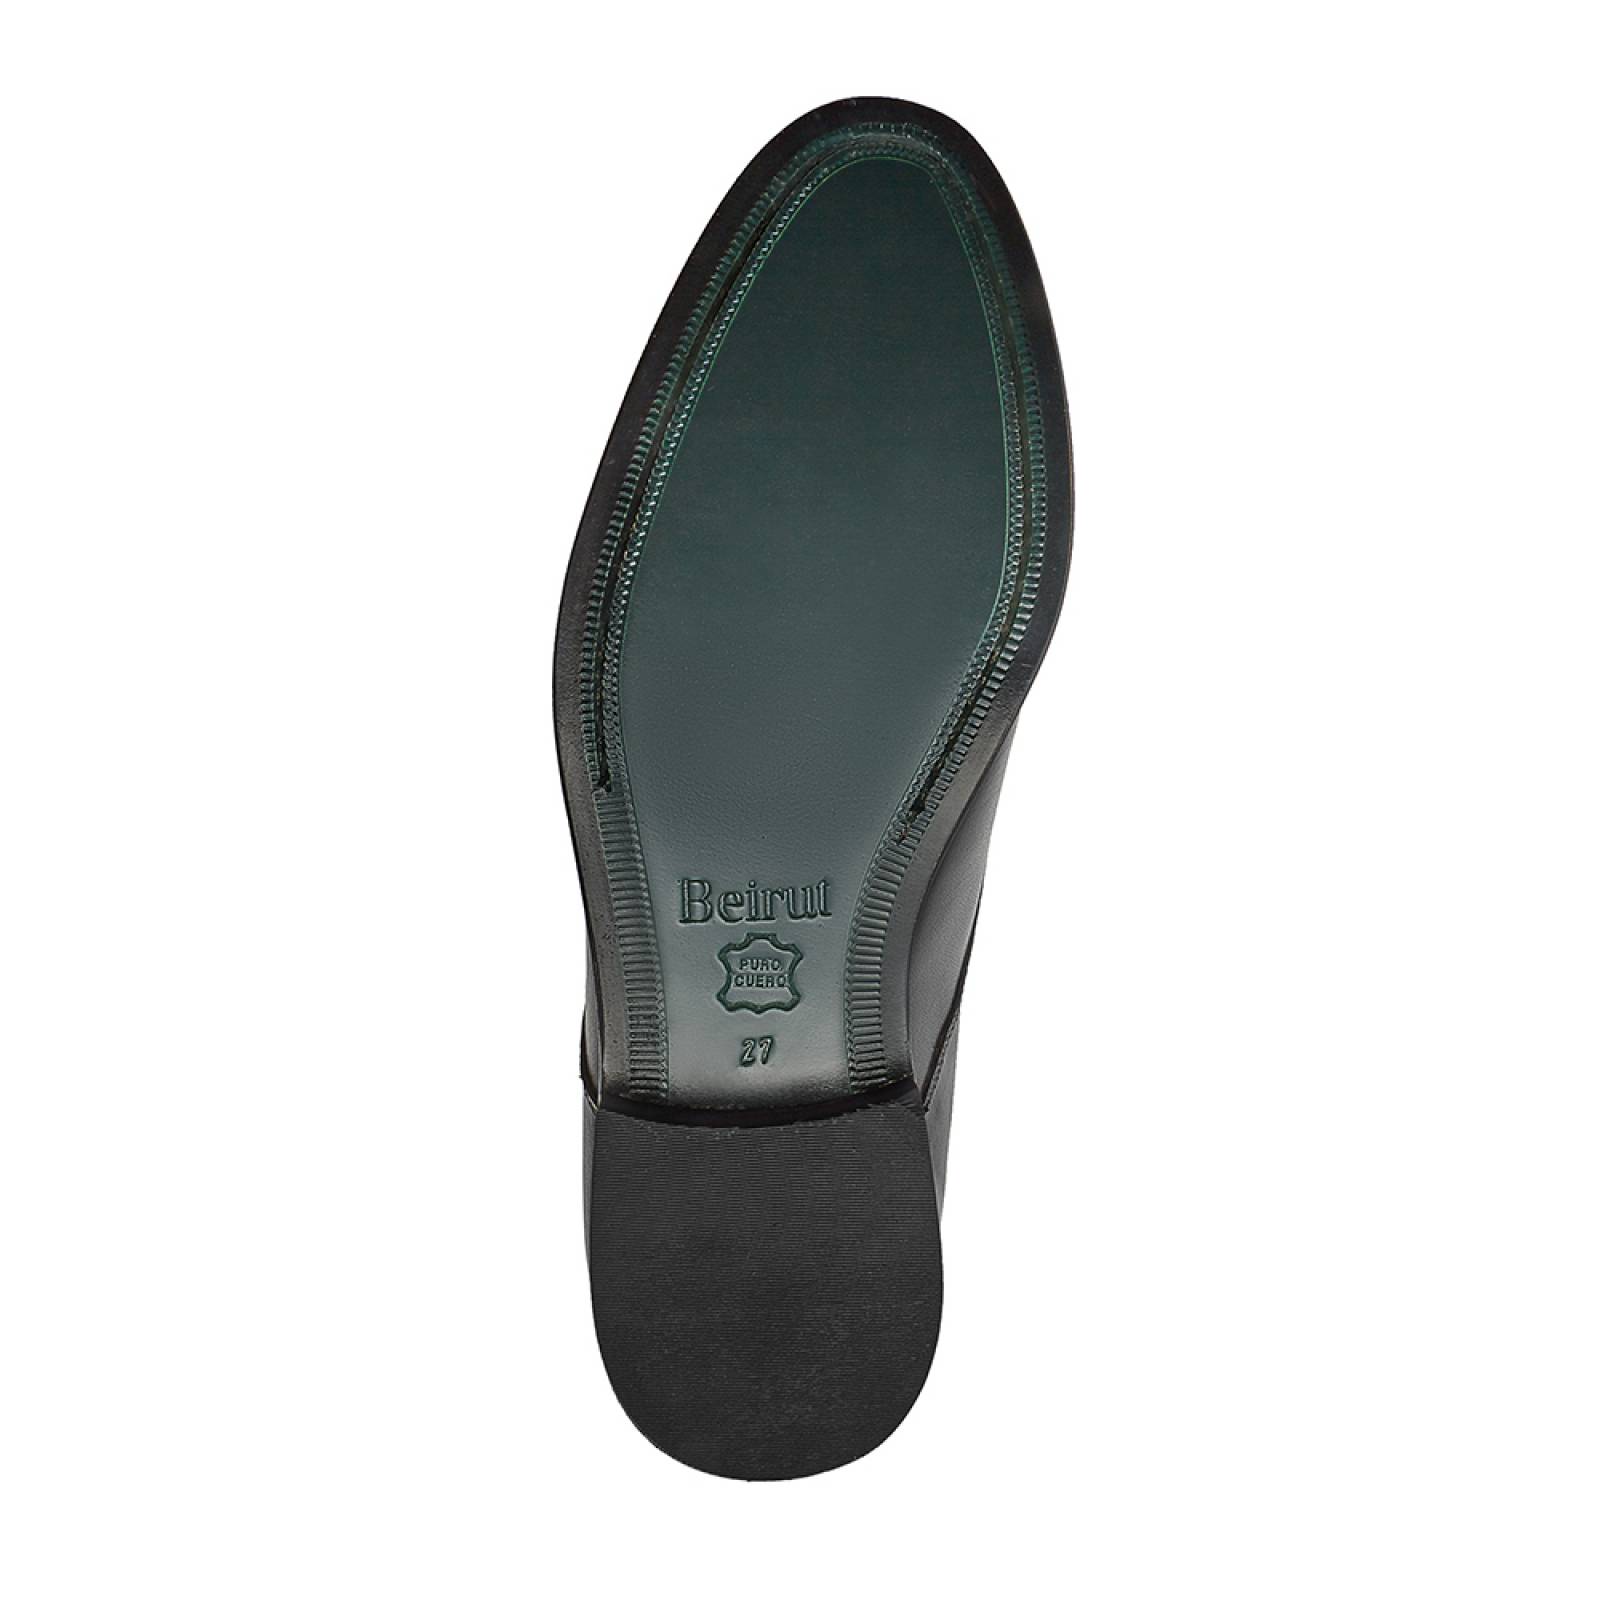 Zapato Caballero Tebet Oxford Formal Casual Piel  Negro 27.5Beirut